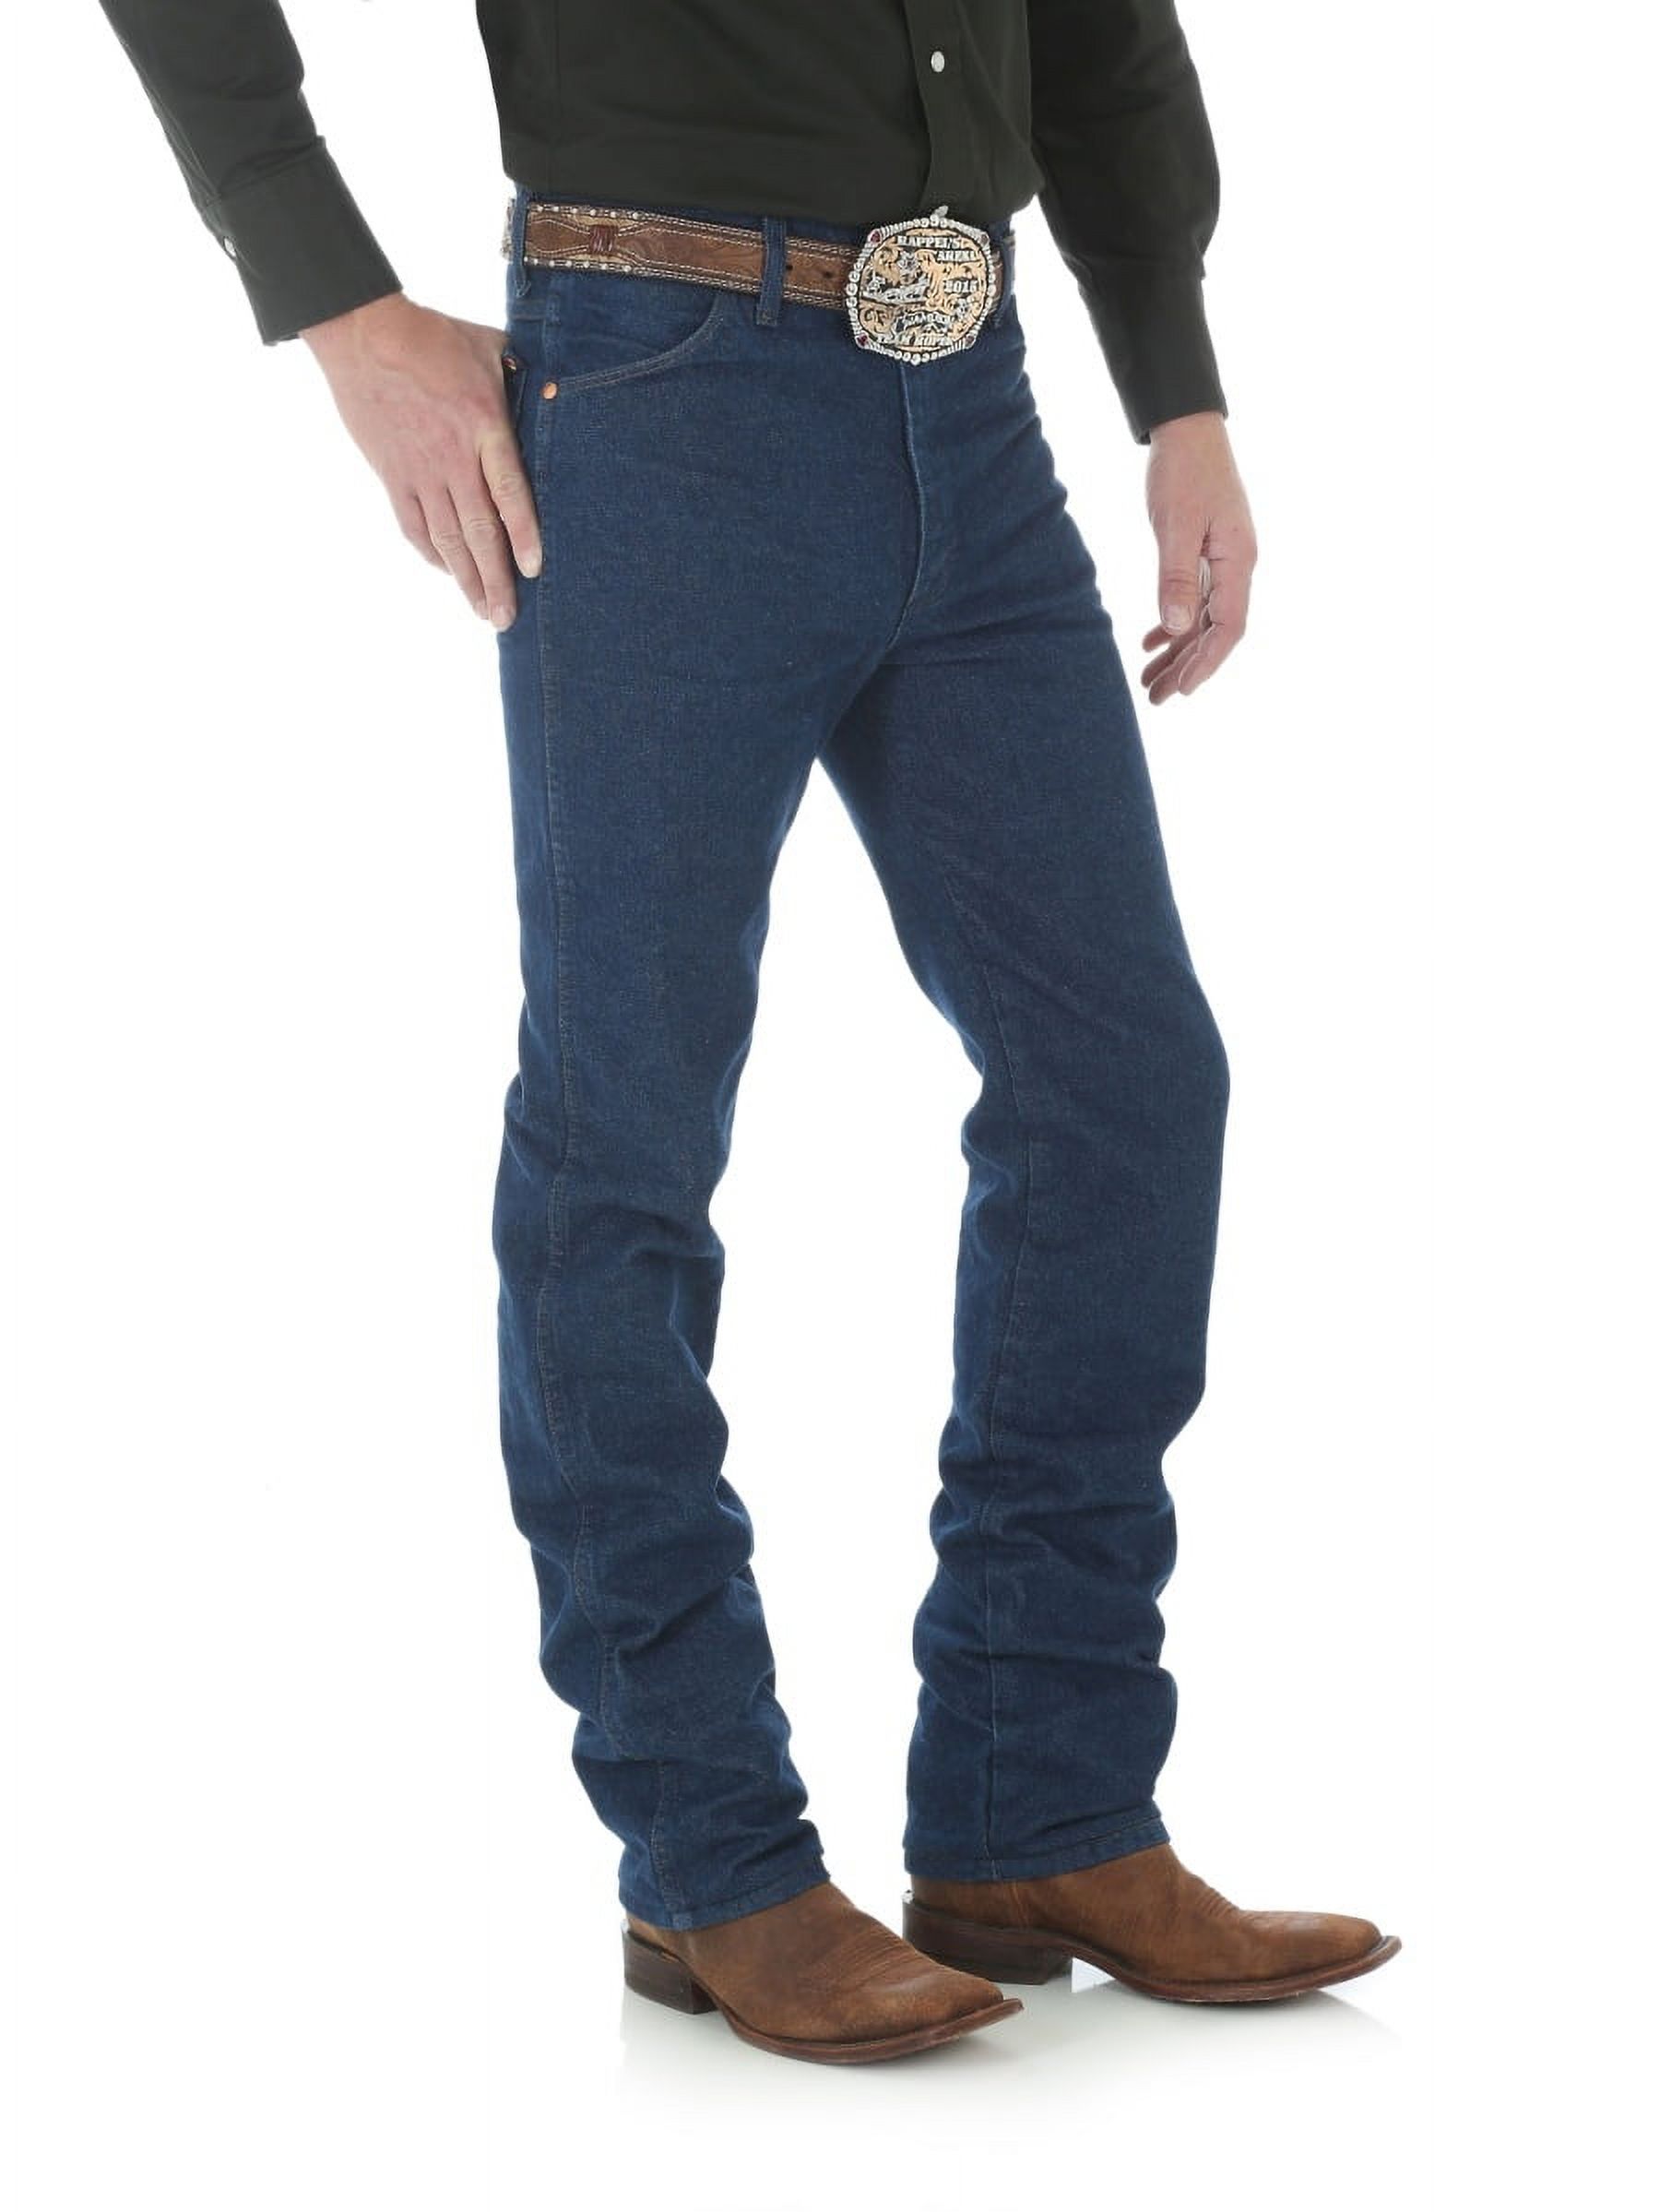 Wrangler Men's Cowboy Cut Slim Fit Jean - Walmart.com